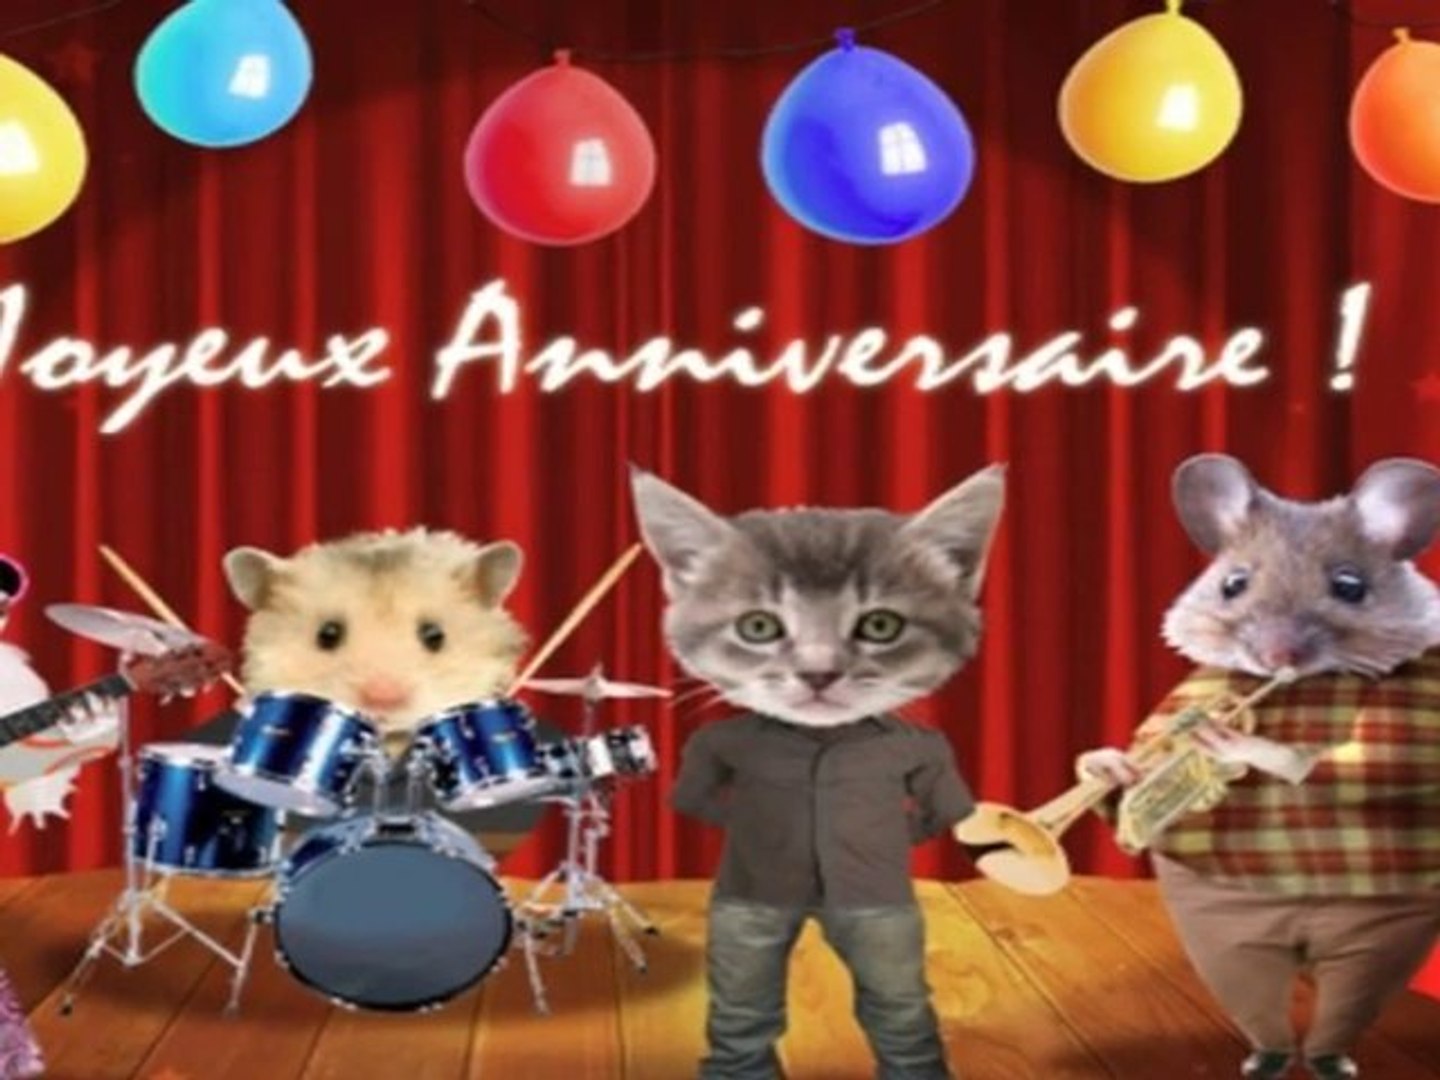 chanson joyeux anniversaire humour Bon Et Joyeux Anniversaire Video Dailymotion chanson joyeux anniversaire humour